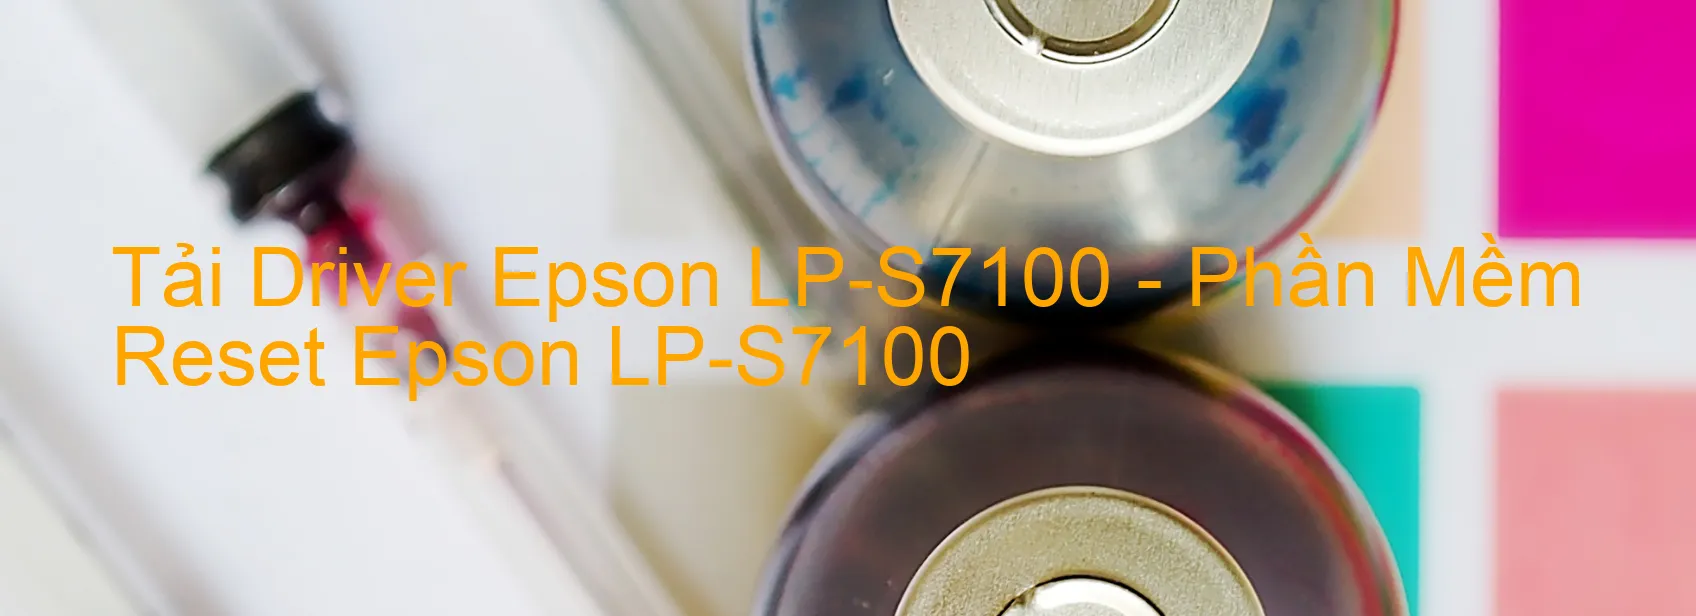 Driver Epson LP-S7100, Phần Mềm Reset Epson LP-S7100